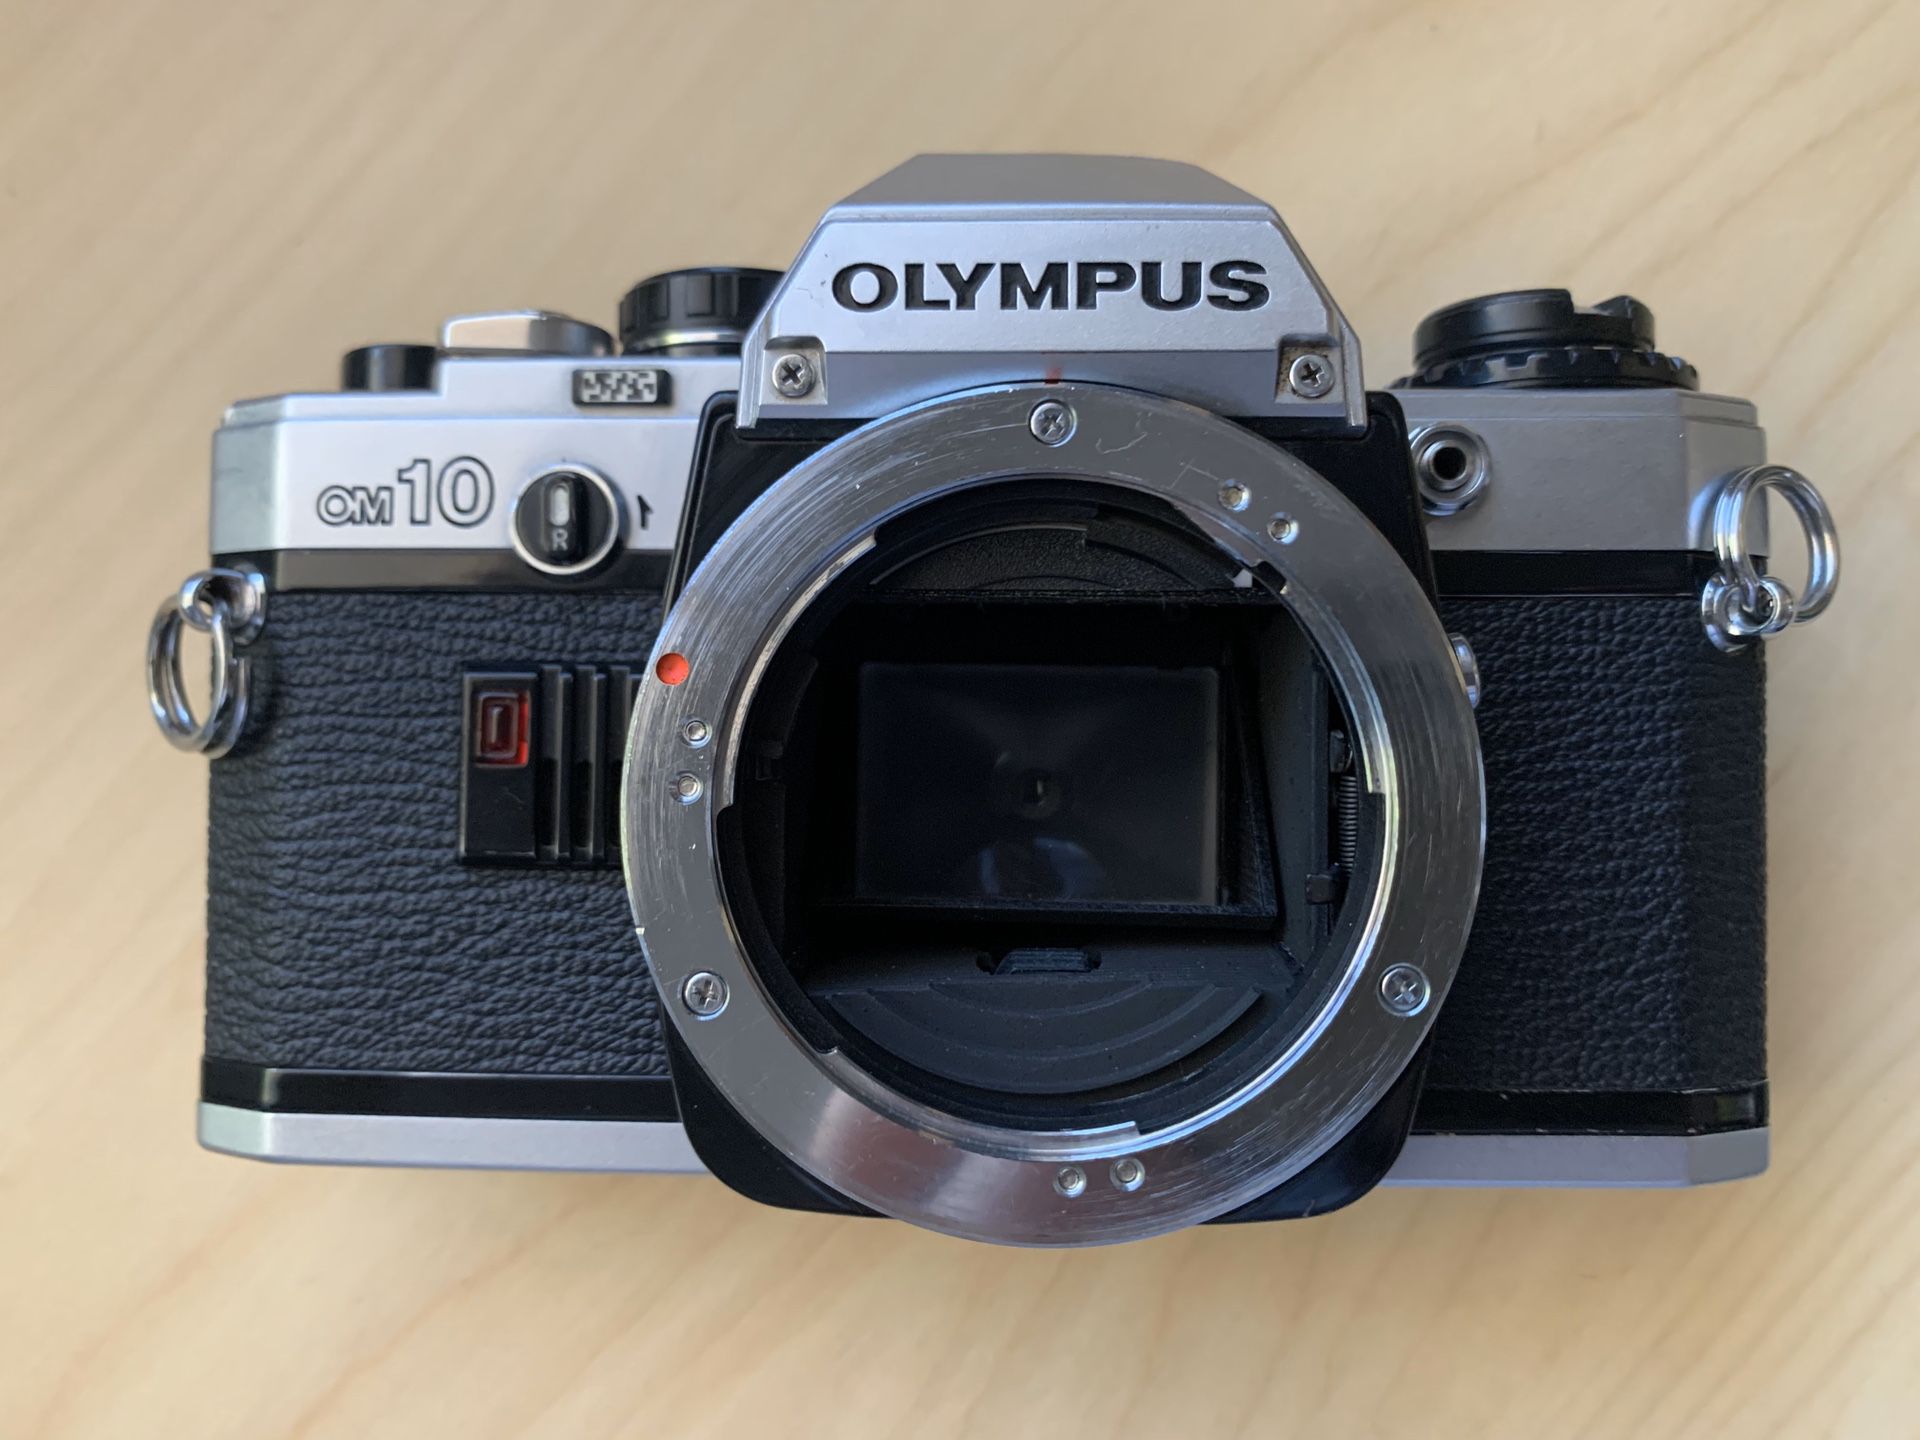 Olympus OM-10, 35mm film camera body